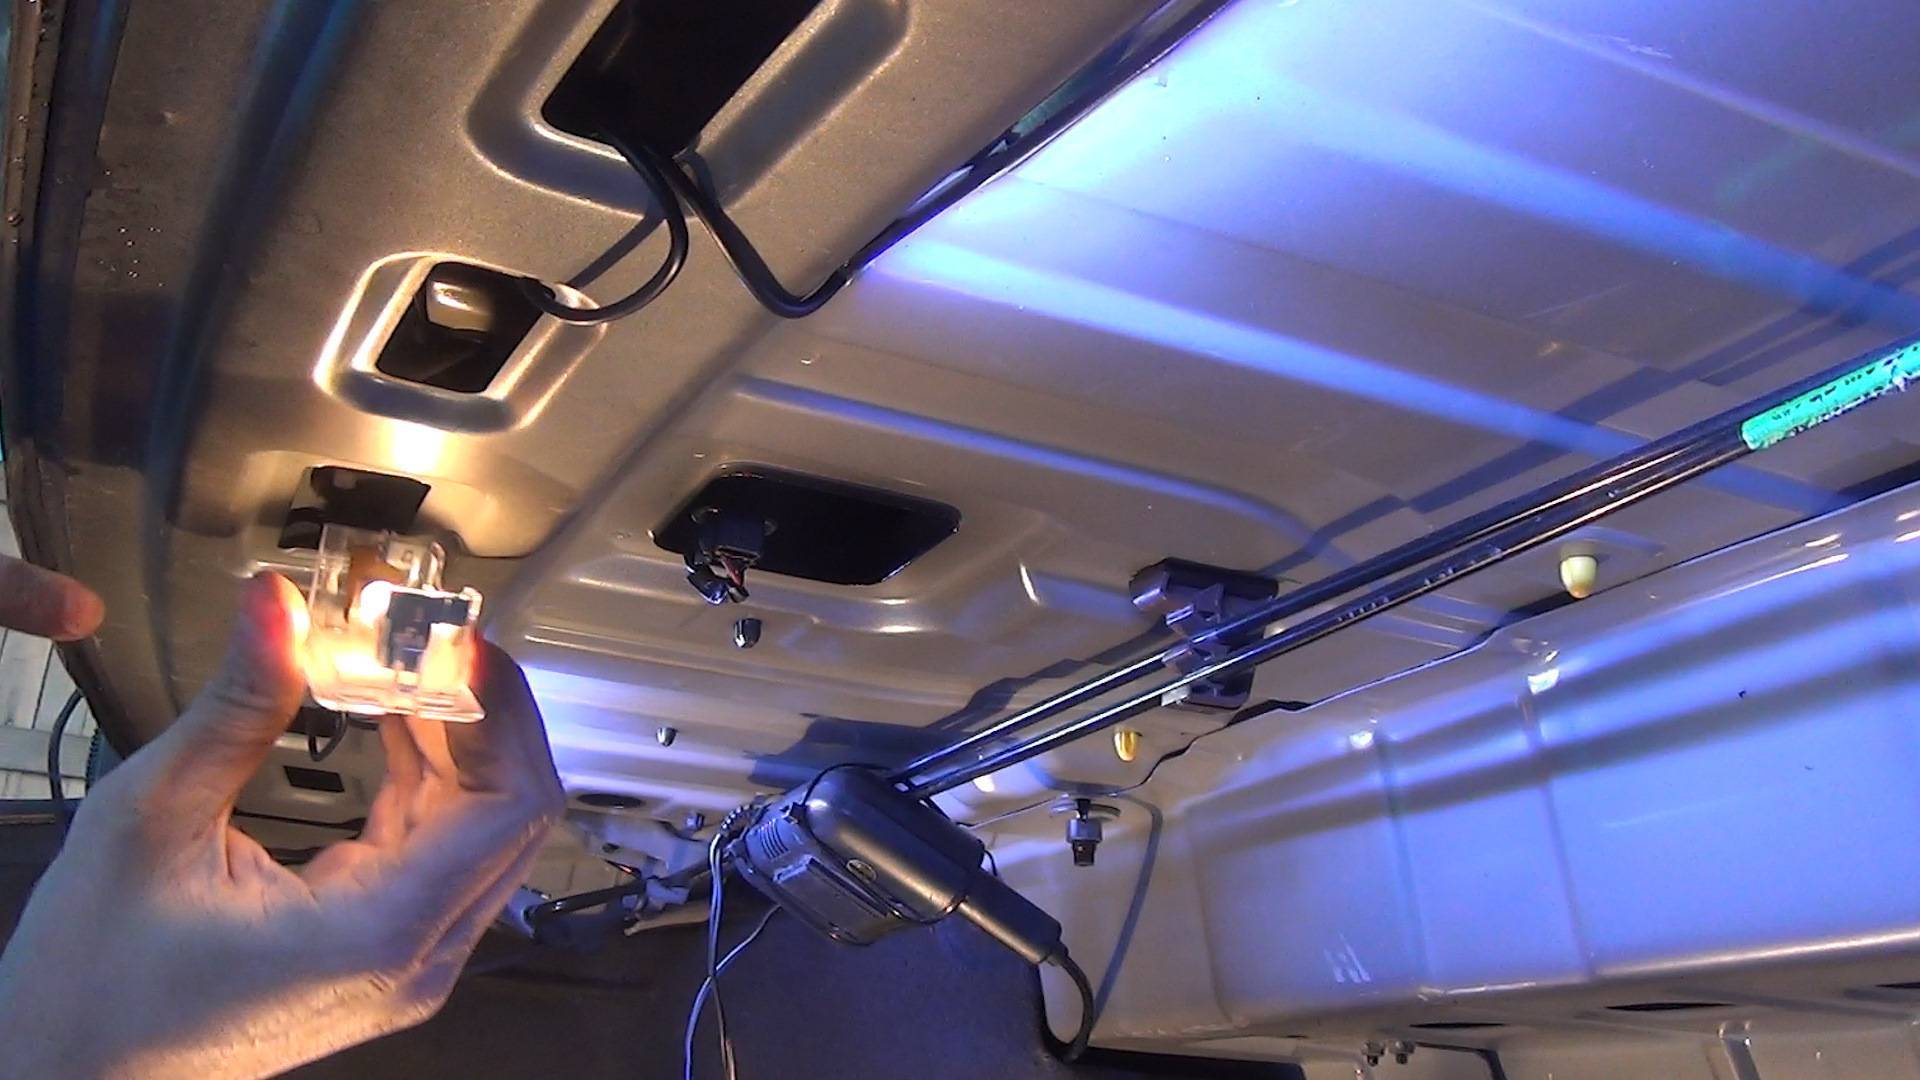 Как подключить светодиодную ленту в машине? ответ